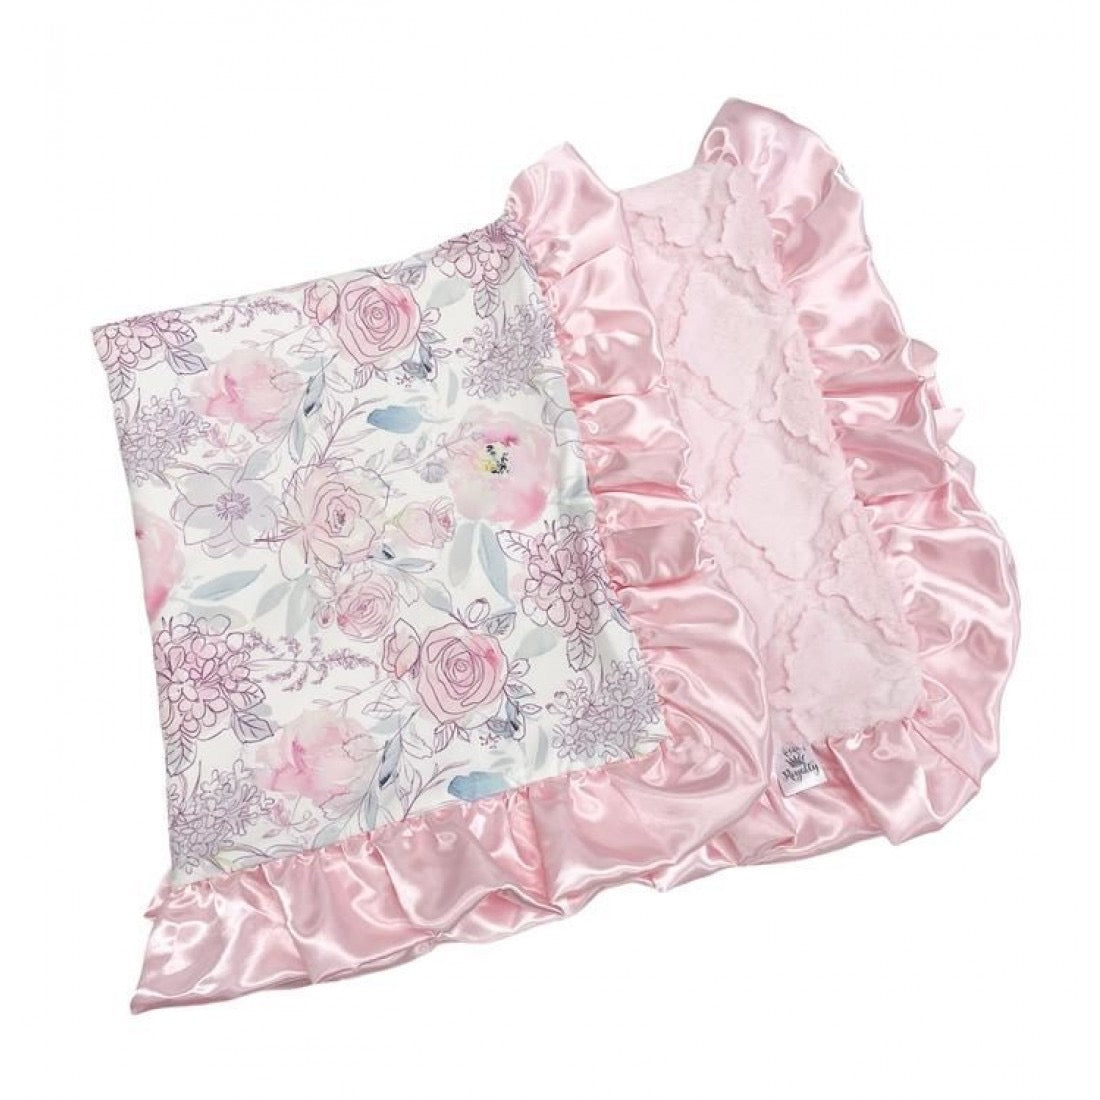 Bashful Pink Floral Blanket